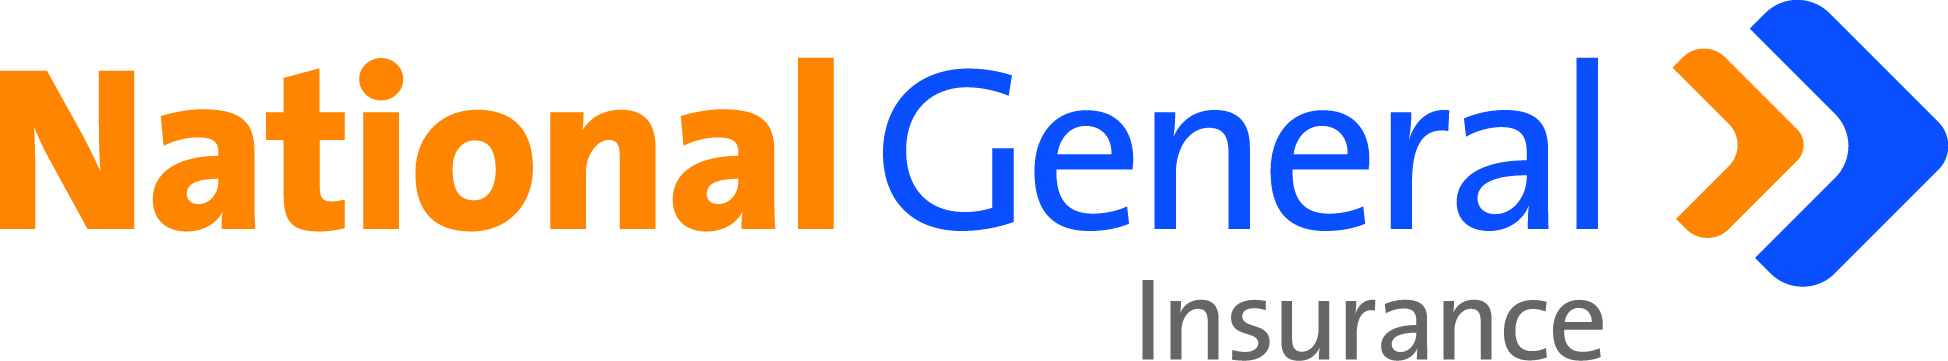 National General Logo Color.jpg